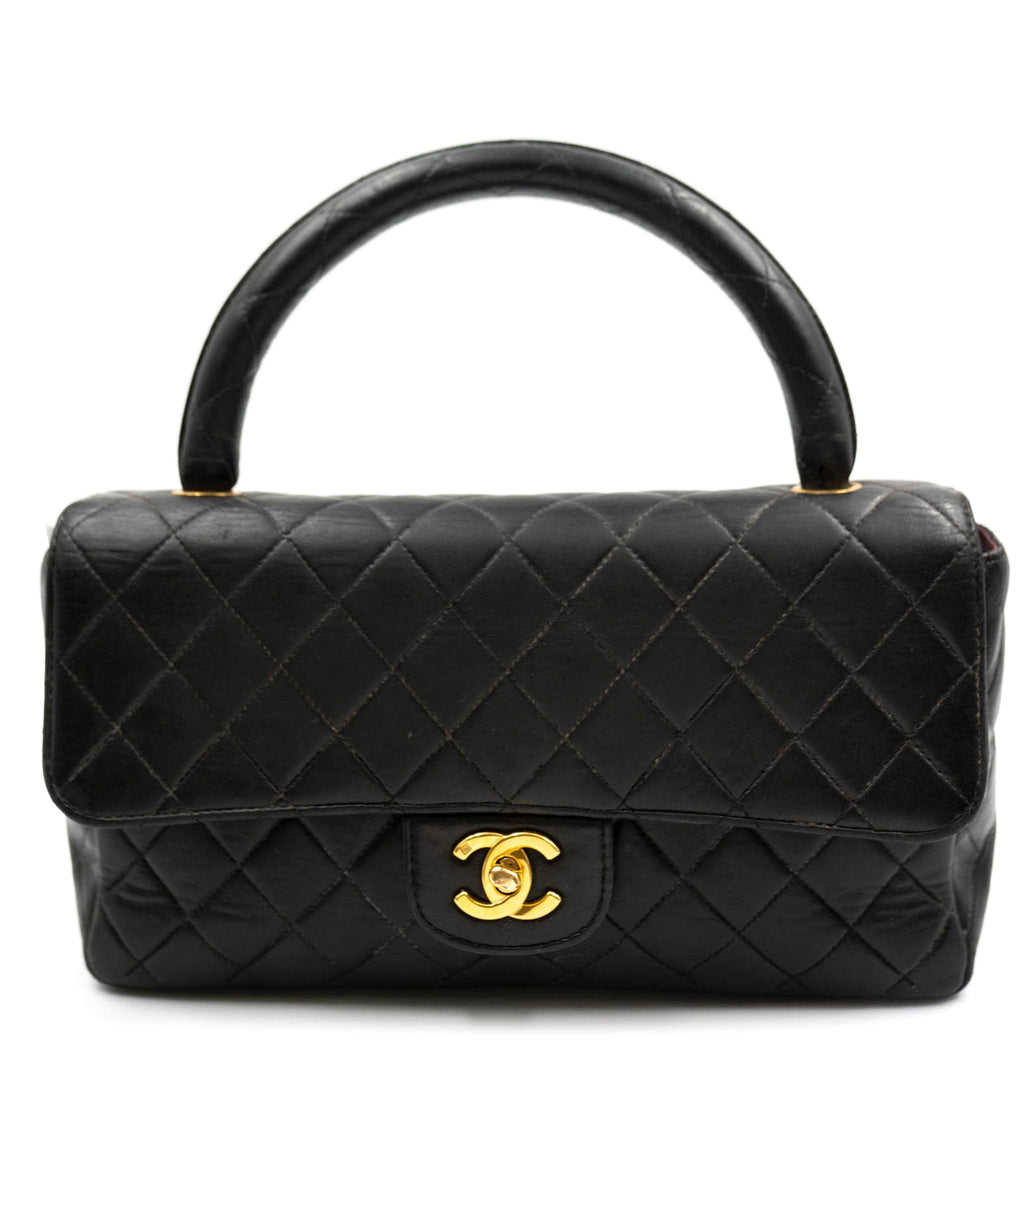 Chanel Coco Top Handle Bag Caviar Leather  lÉtoile de Saint Honoré